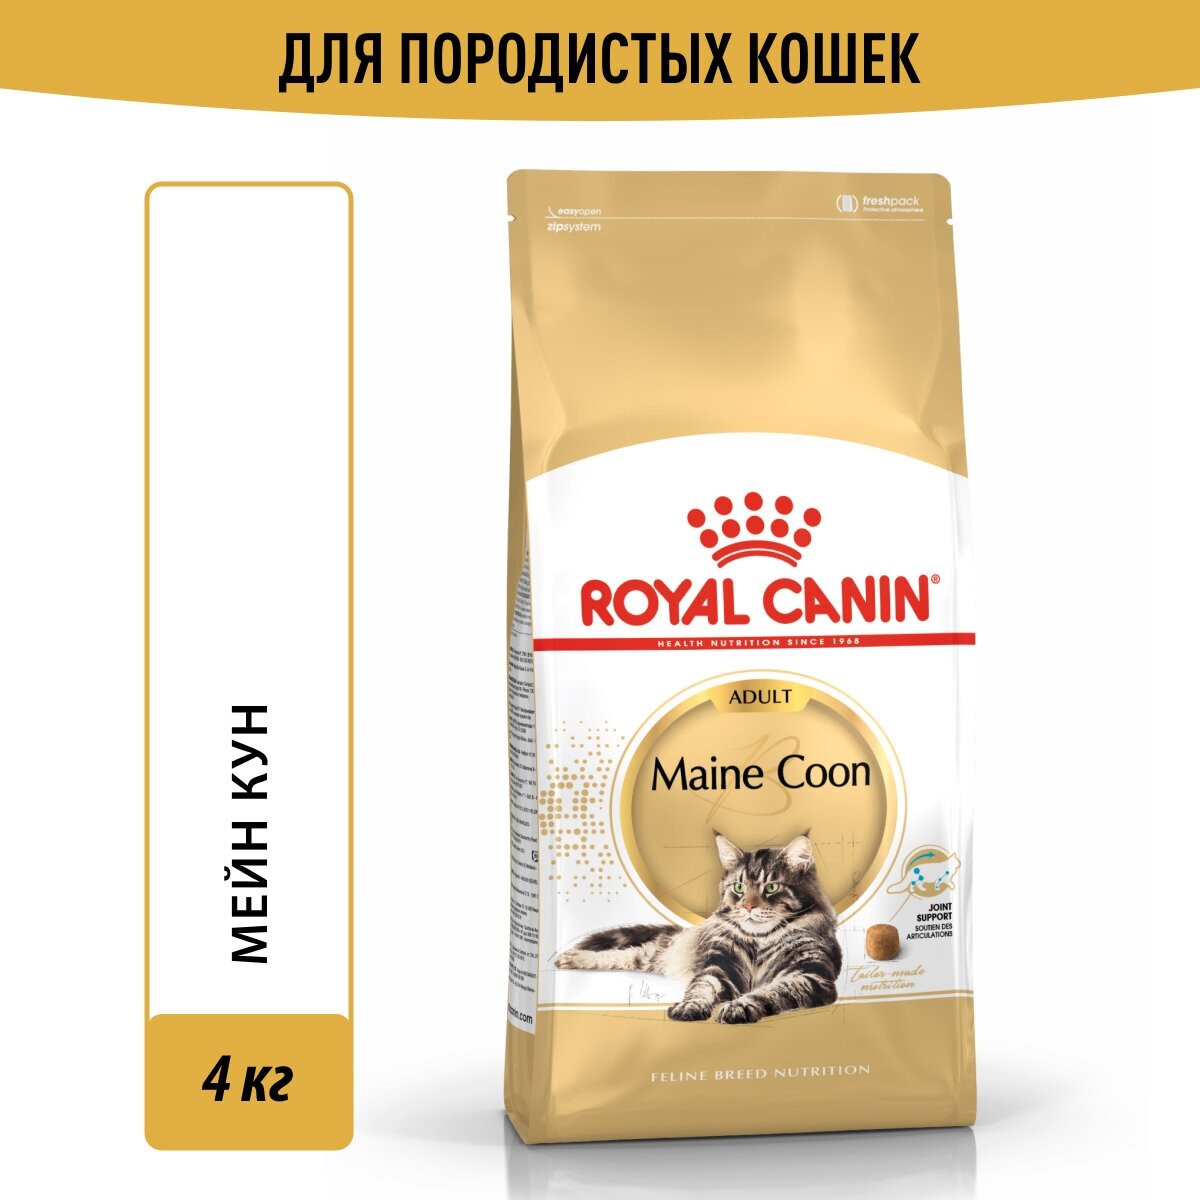 Корм для кошек Royal Canin Maine Coon Adult (Майн Кун Эдалт) Корм сухой сбалансированный для взрослых кошек породы Мэйн Кун, 4 кг